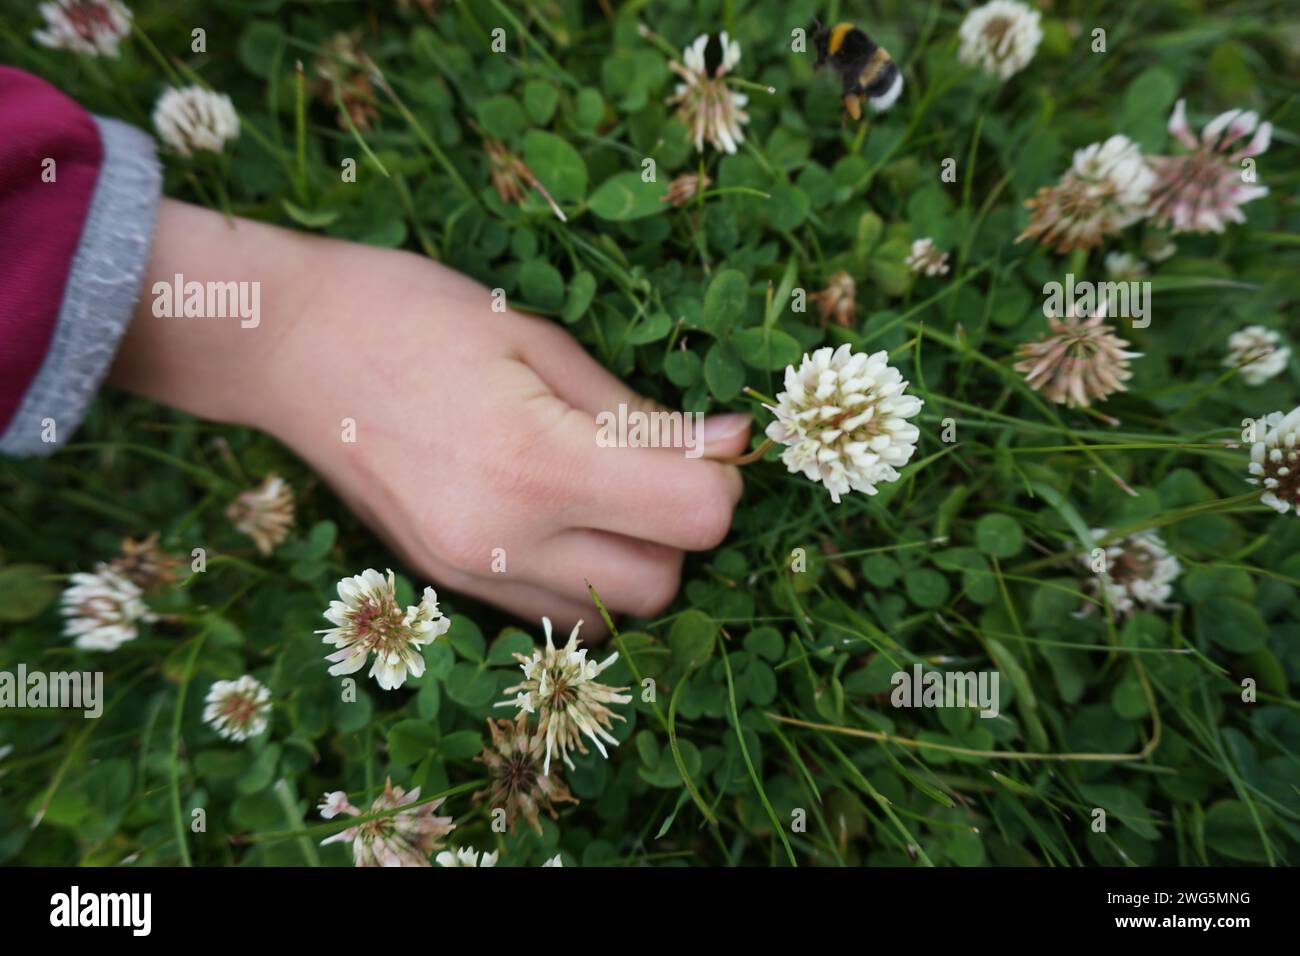 La mano de un niño recoge una flor en el prado con trébol Foto de stock